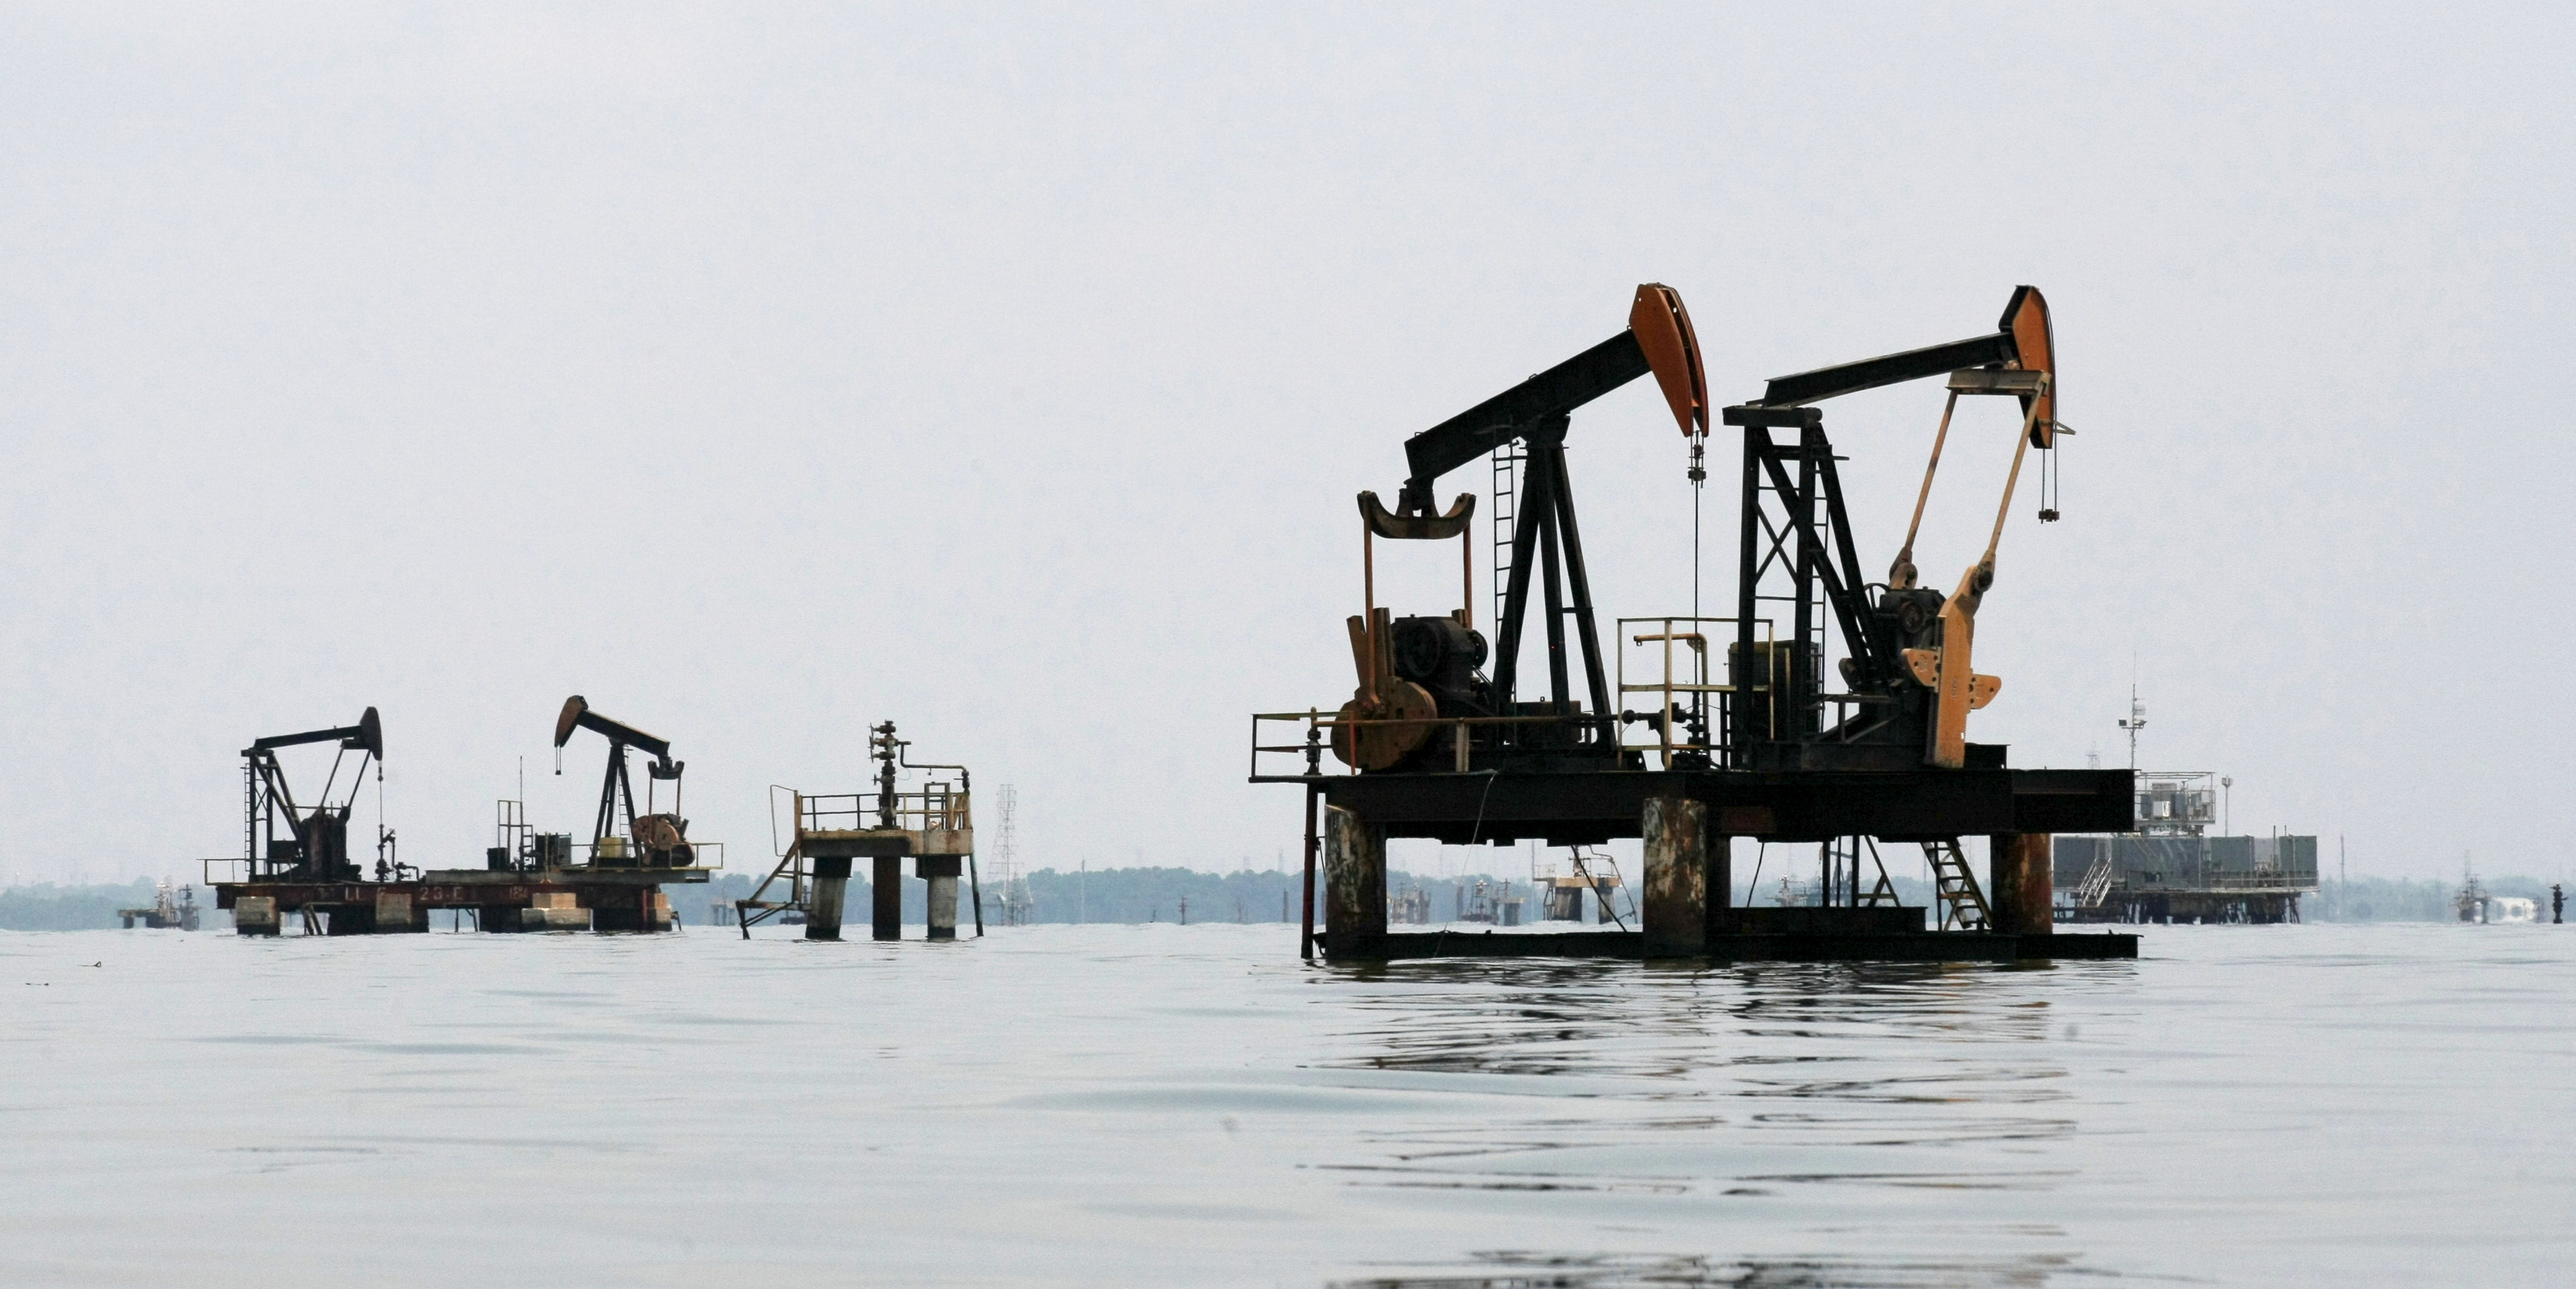 Les sanctions contre la Russie pourraient provoquer un « choc » de l'offre pétrolière mondiale